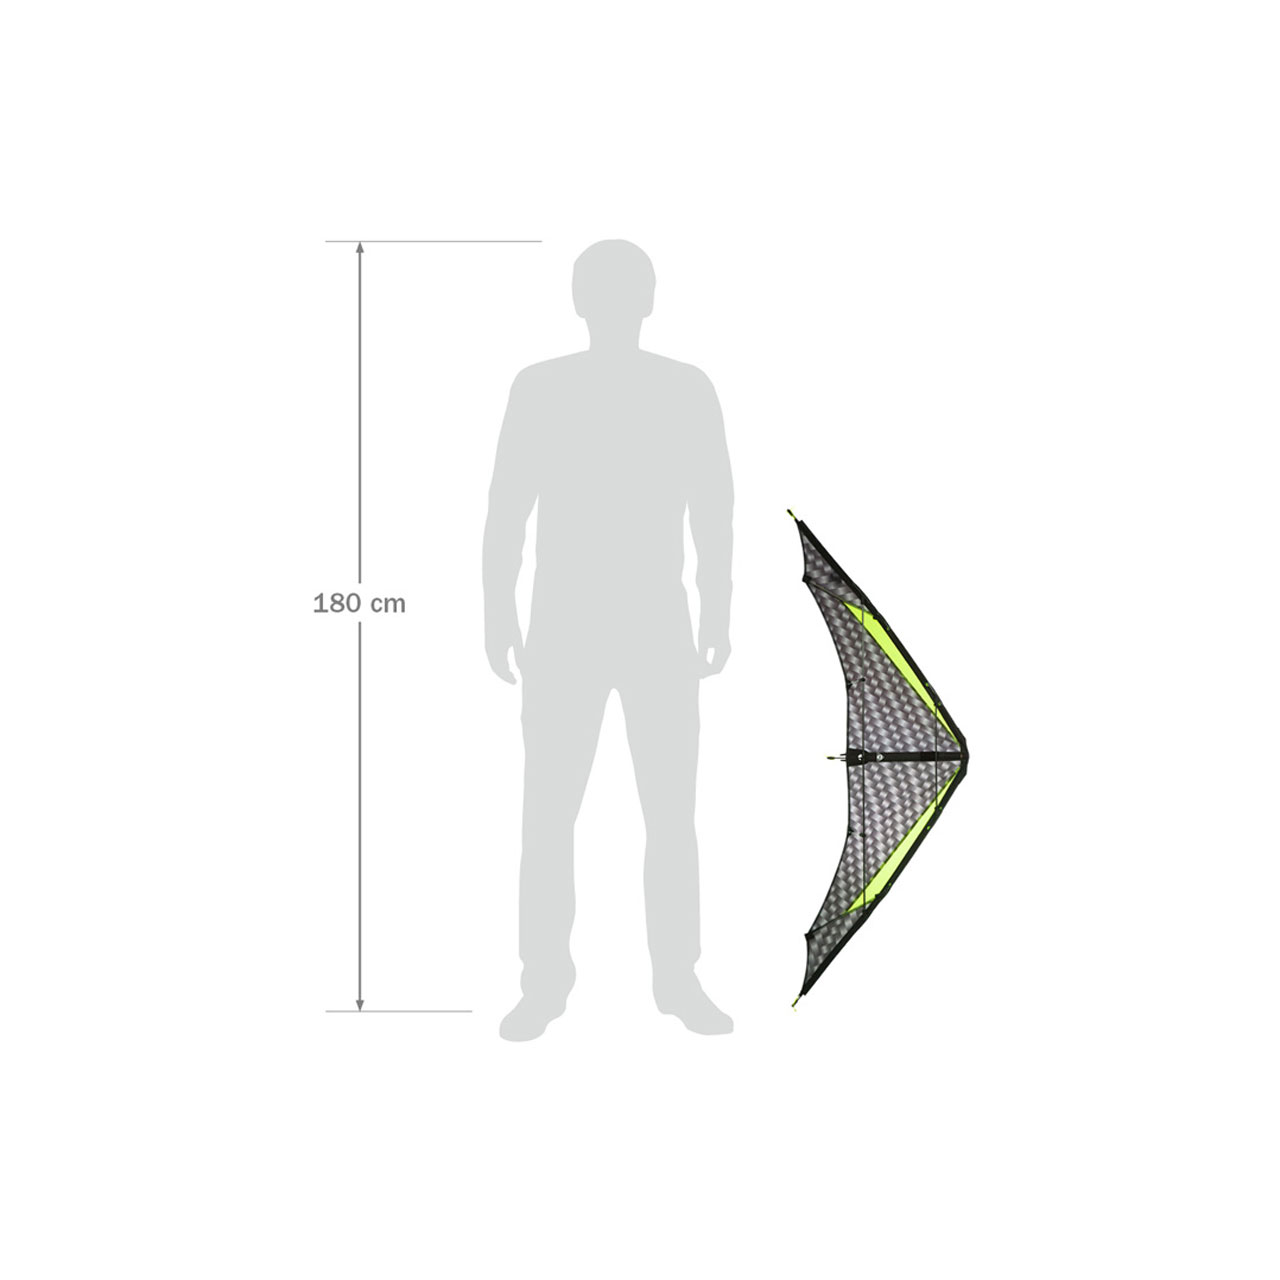 Invento HQ Kite Little Arrow – Größenvergleich